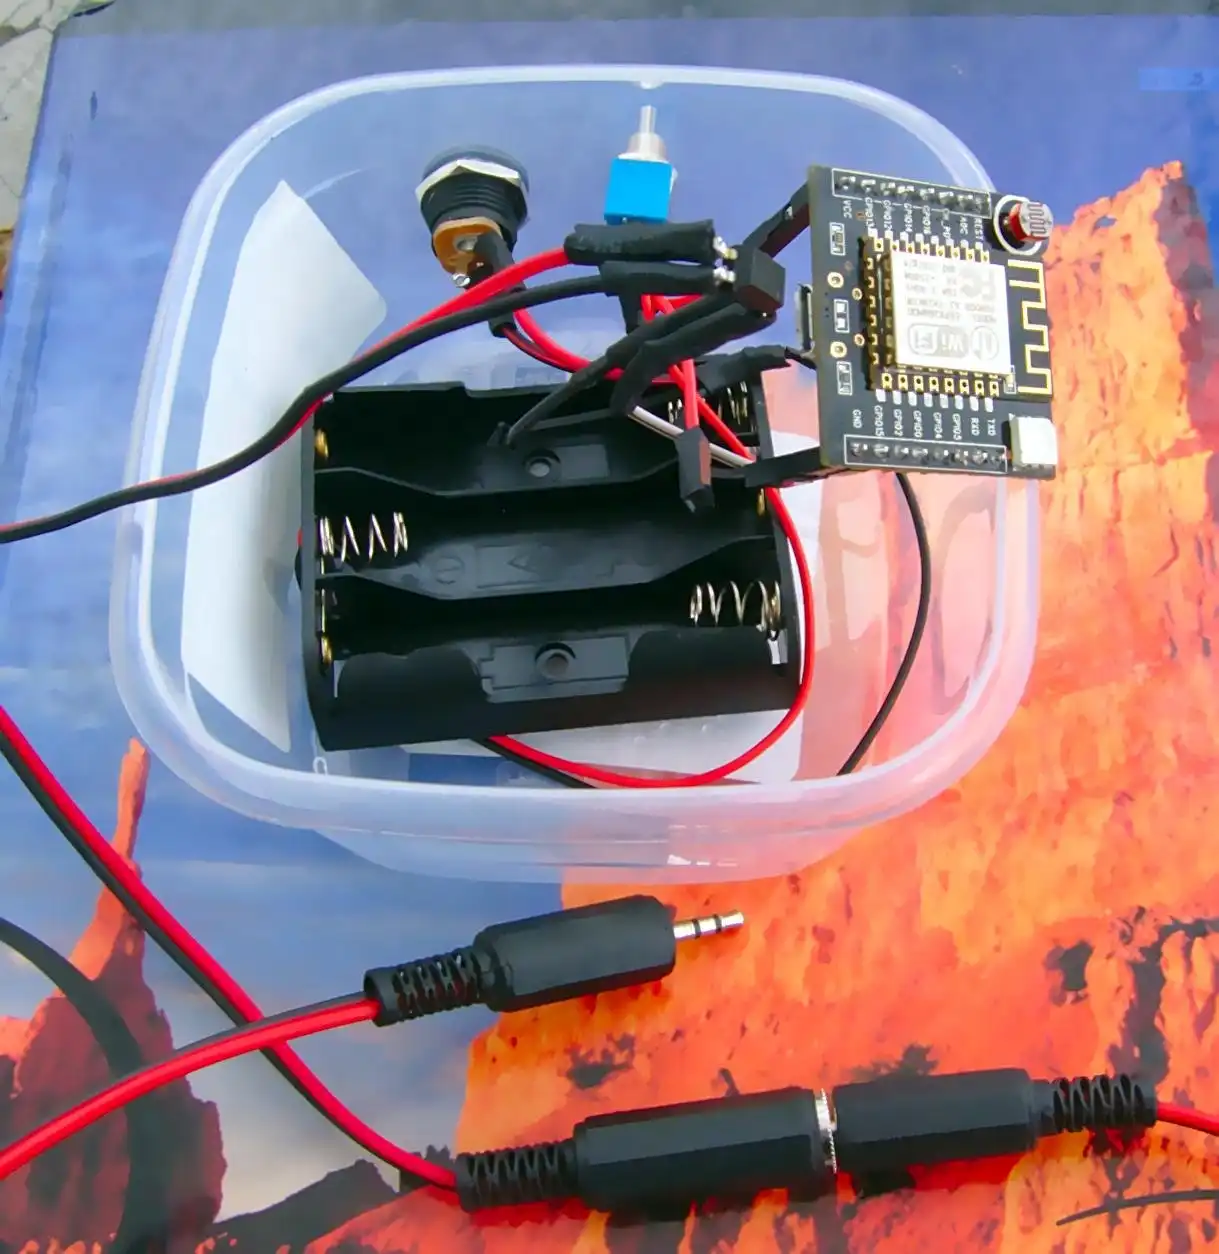 വെബ് ടൂൾ അല്ലെങ്കിൽ വെബ് ആപ്പ് Arduino DSLR റിമോട്ട് കൺട്രോളർ ഡൗൺലോഡ് ചെയ്യുക